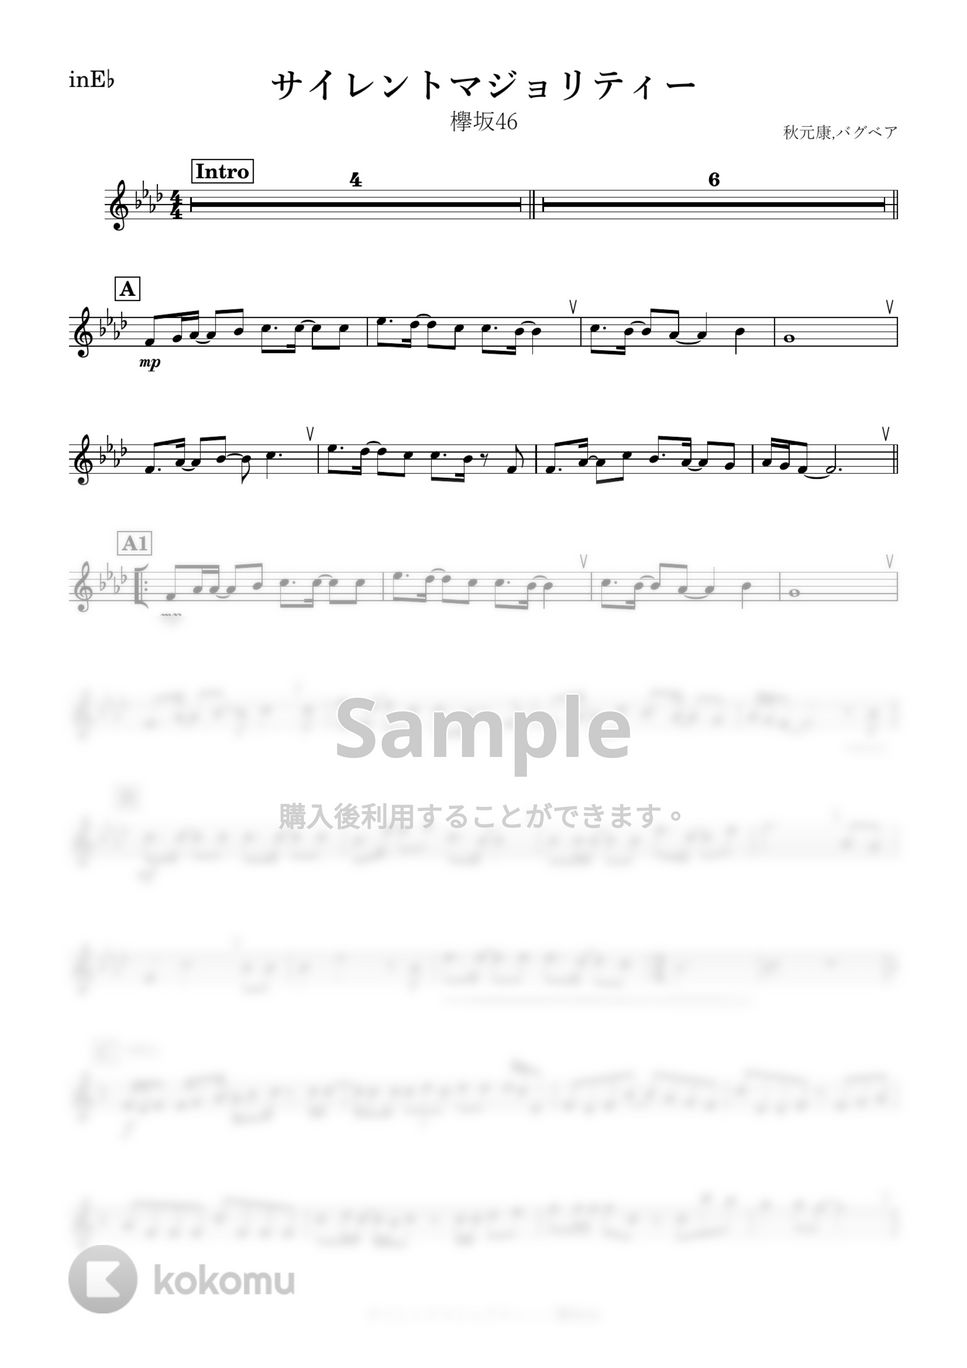 欅坂46 - サイレントマジョリティー (E♭) by kanamusic